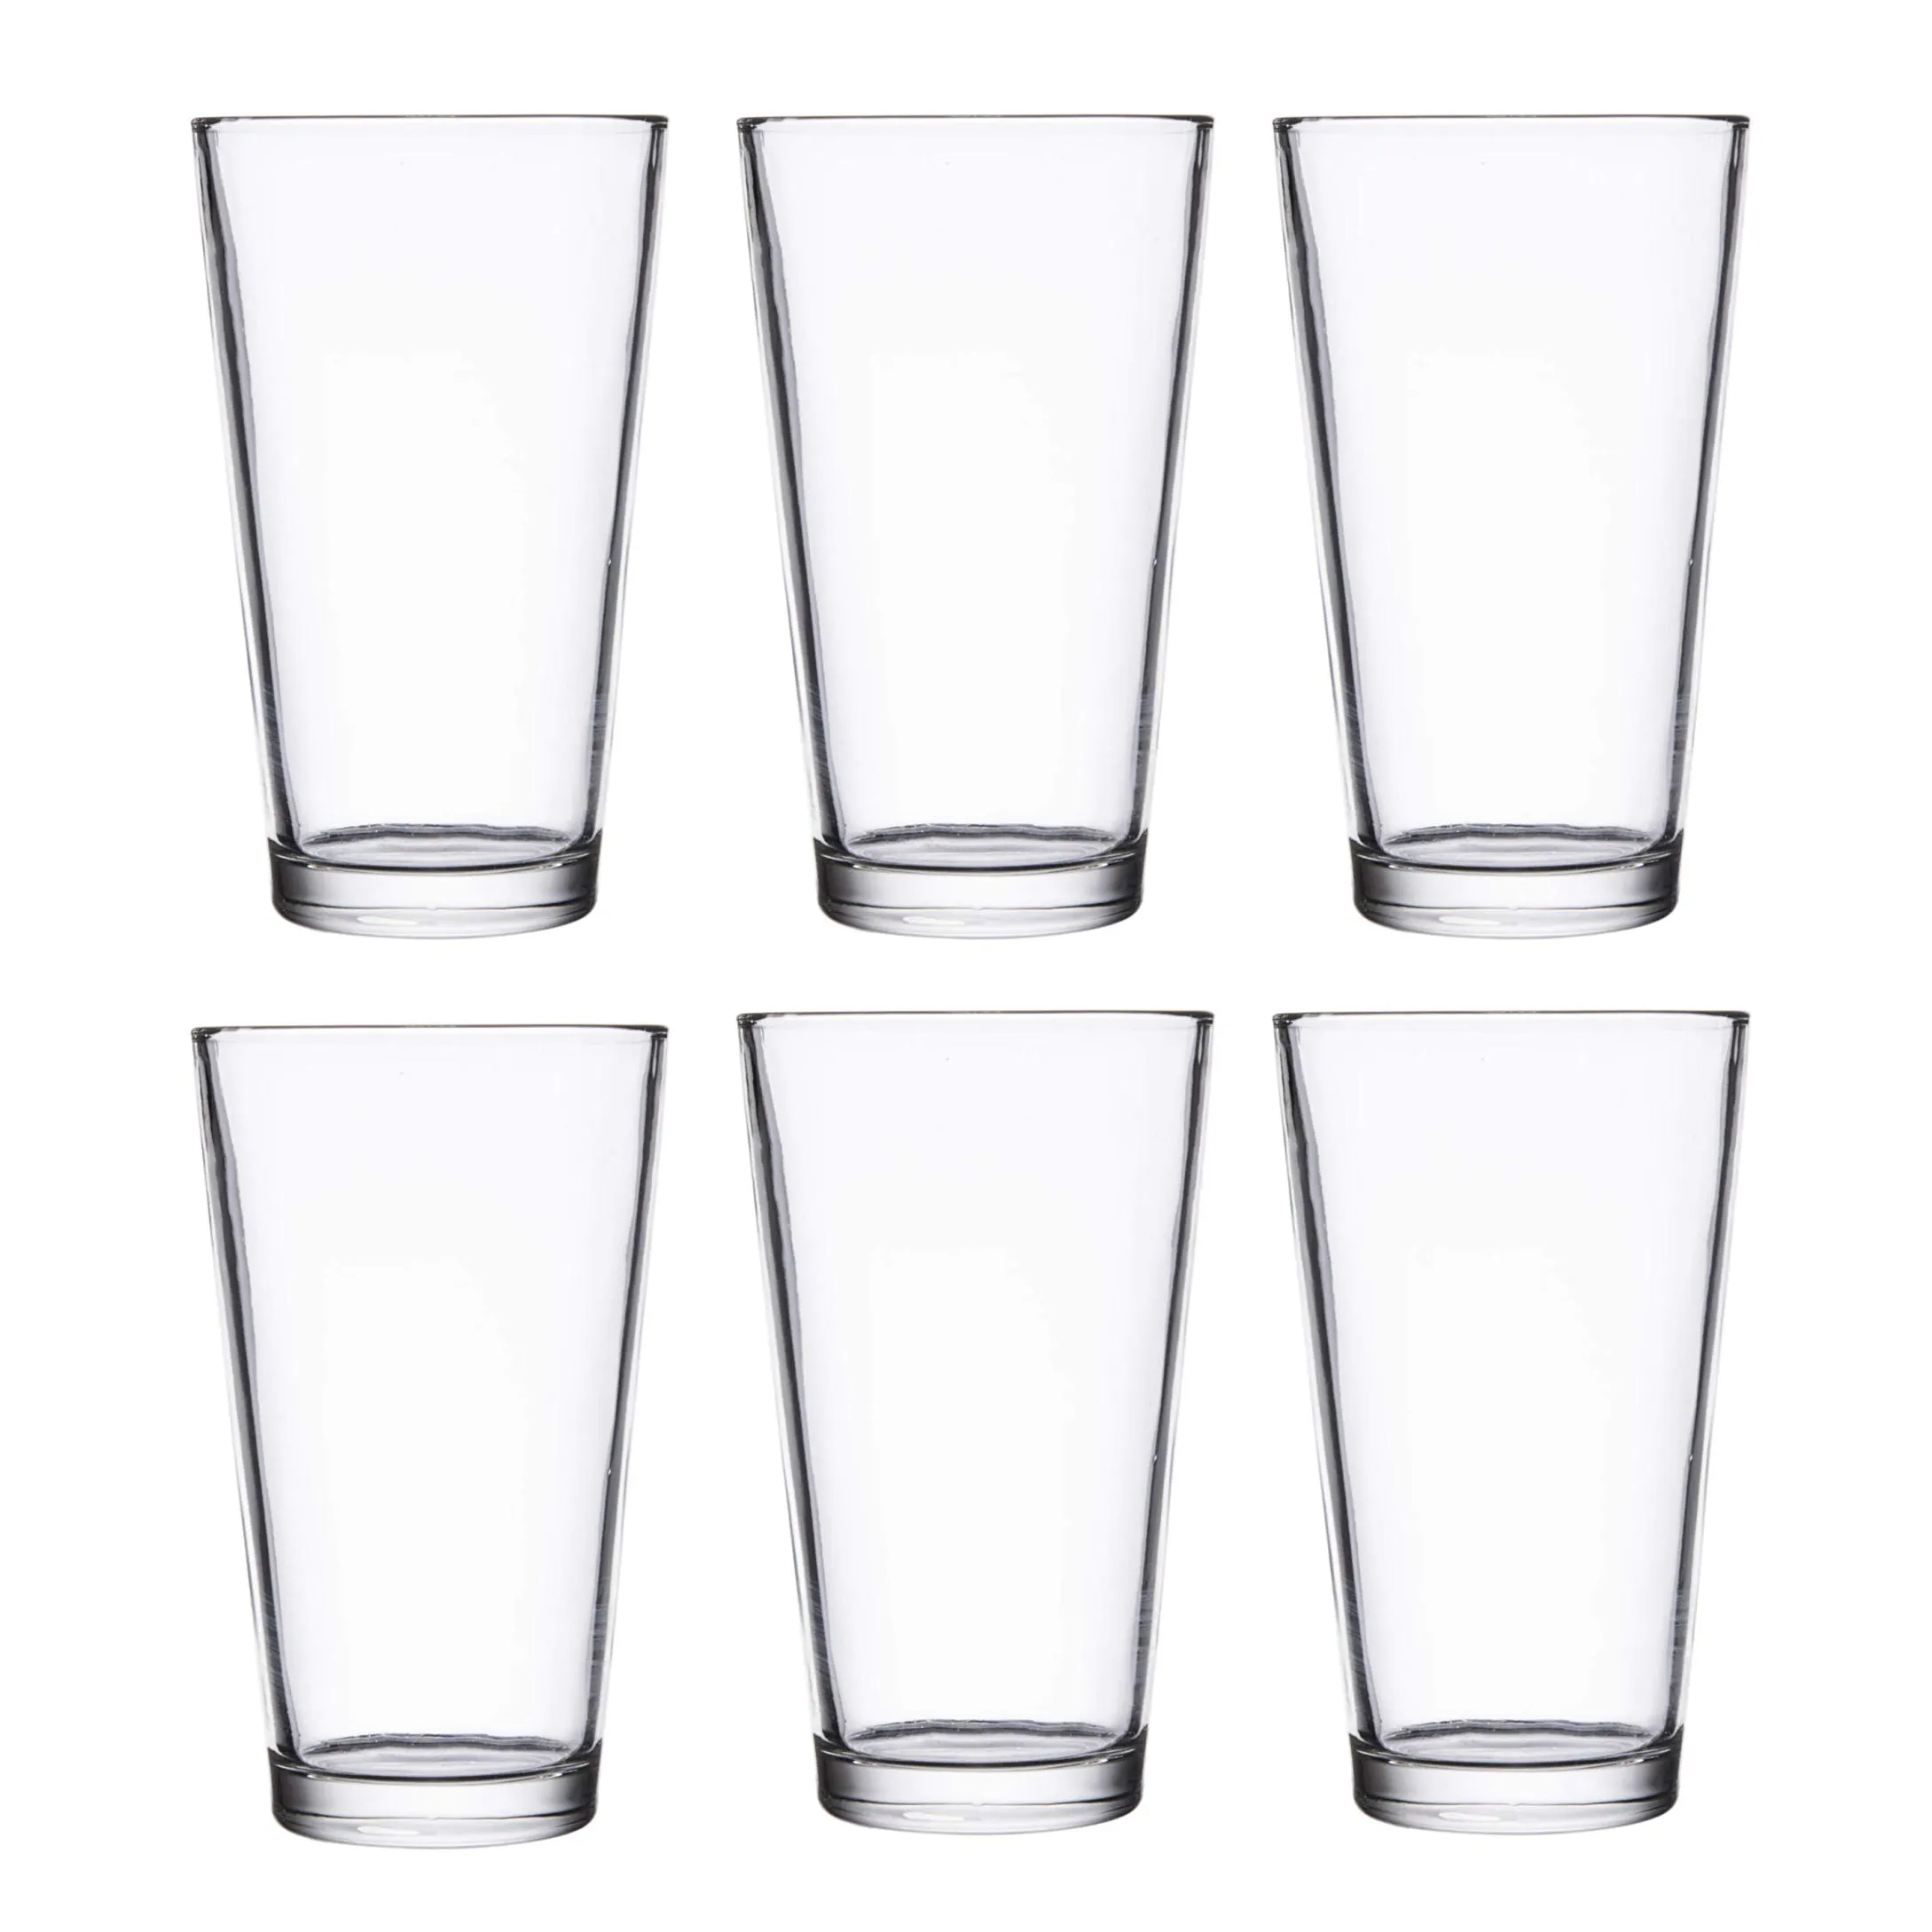 Großhandel günstigen Preis transparent klar benutzer definierte 16oz Pint Gläser Bierkrüge Trinkglas mit Logo-Druck